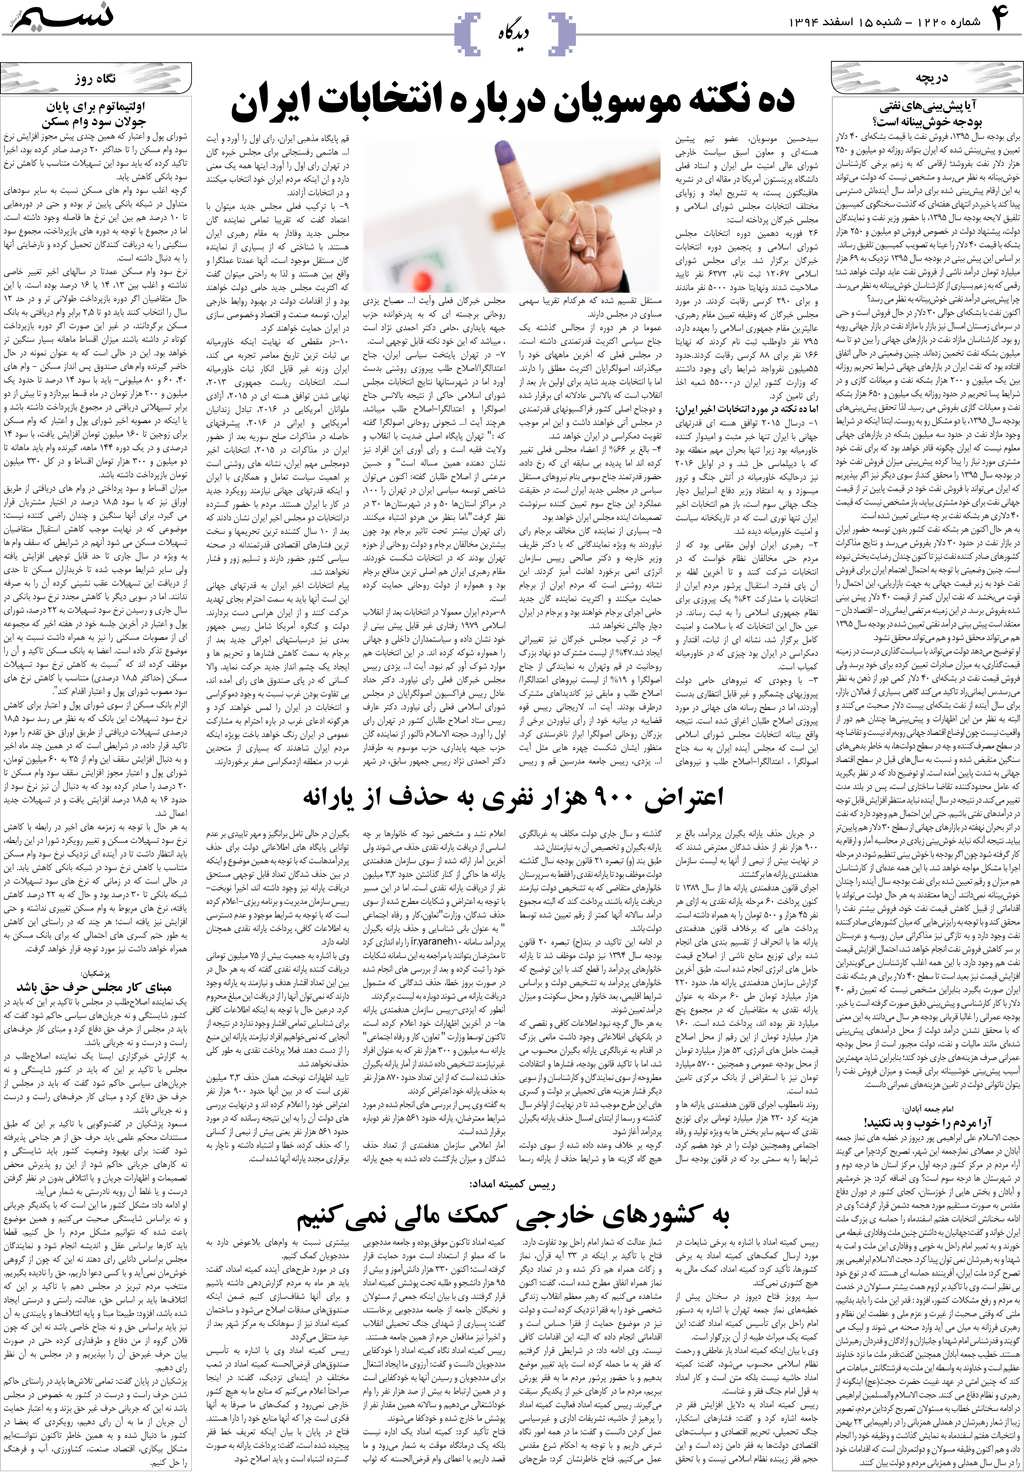 صفحه دیدگاه روزنامه نسیم شماره 1220